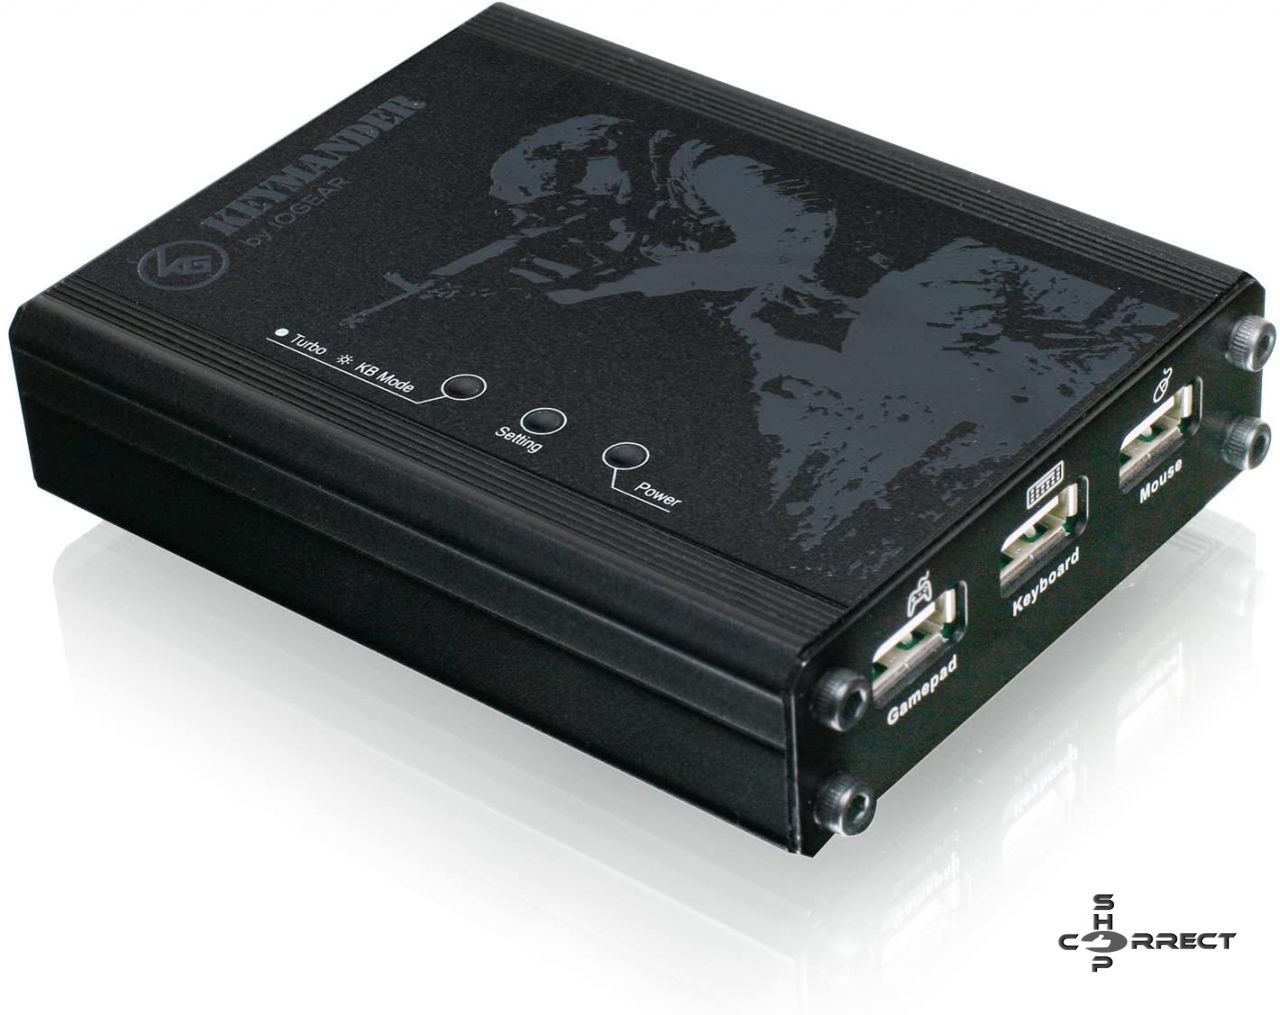 IOGEAR KeyMander vezérlő emulátor PS3 / PS4 és XBOX 360 / One játékkonzolhoz